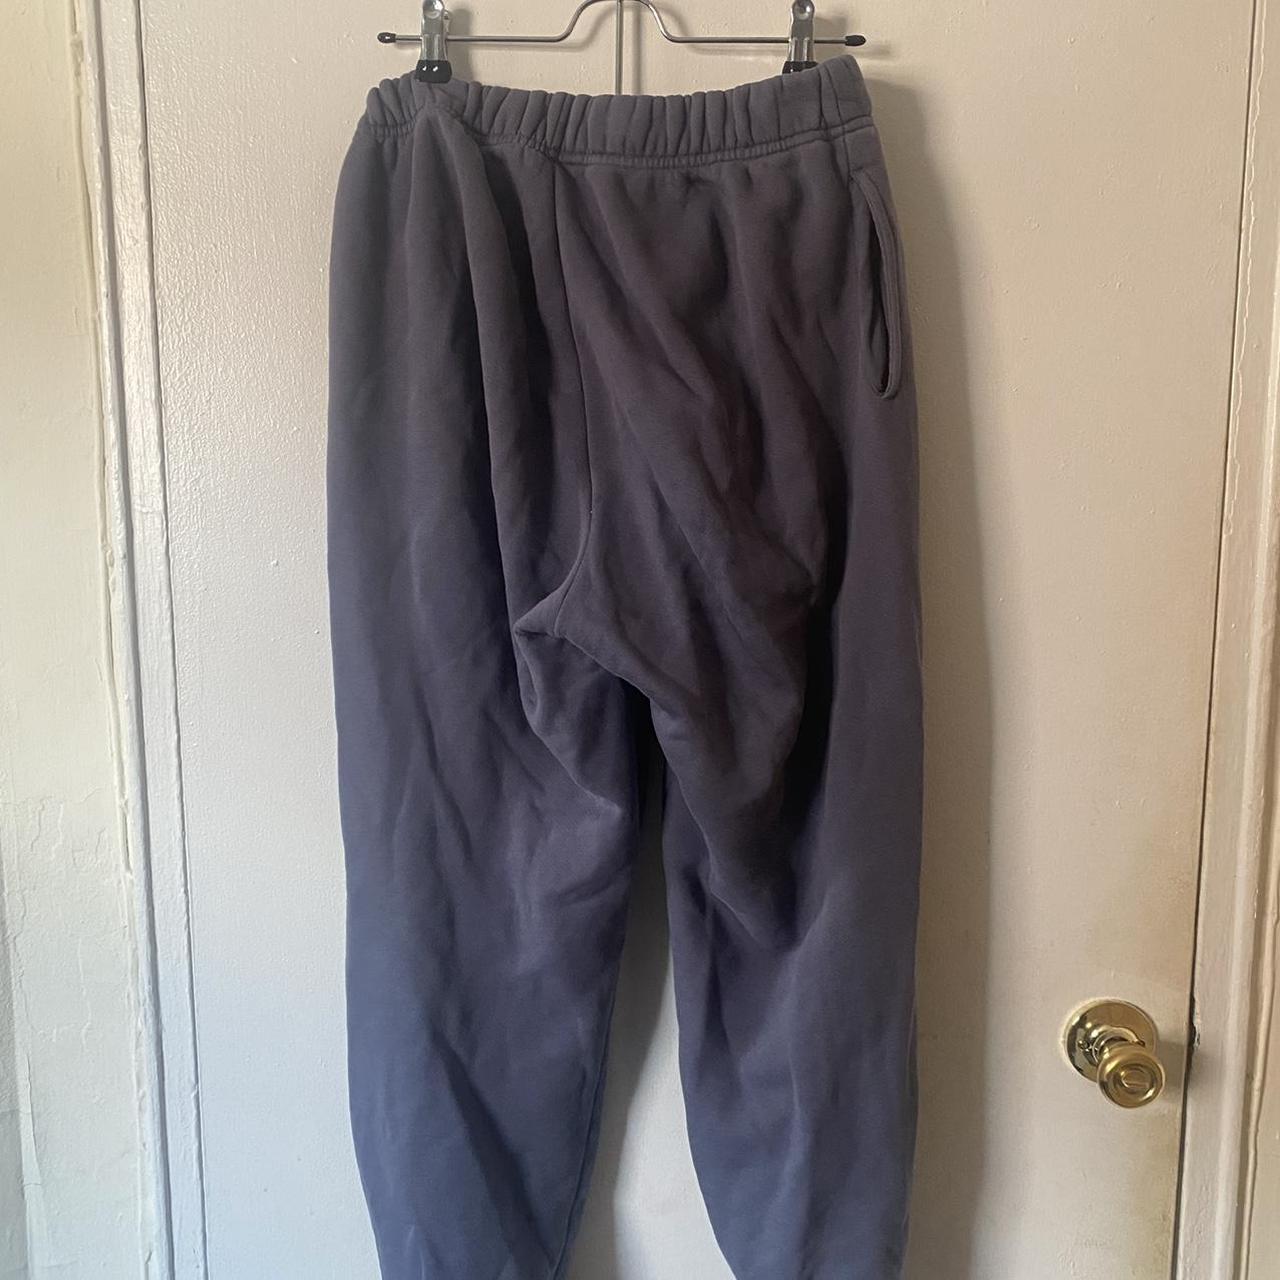 SETactive sweatpants size large - Depop